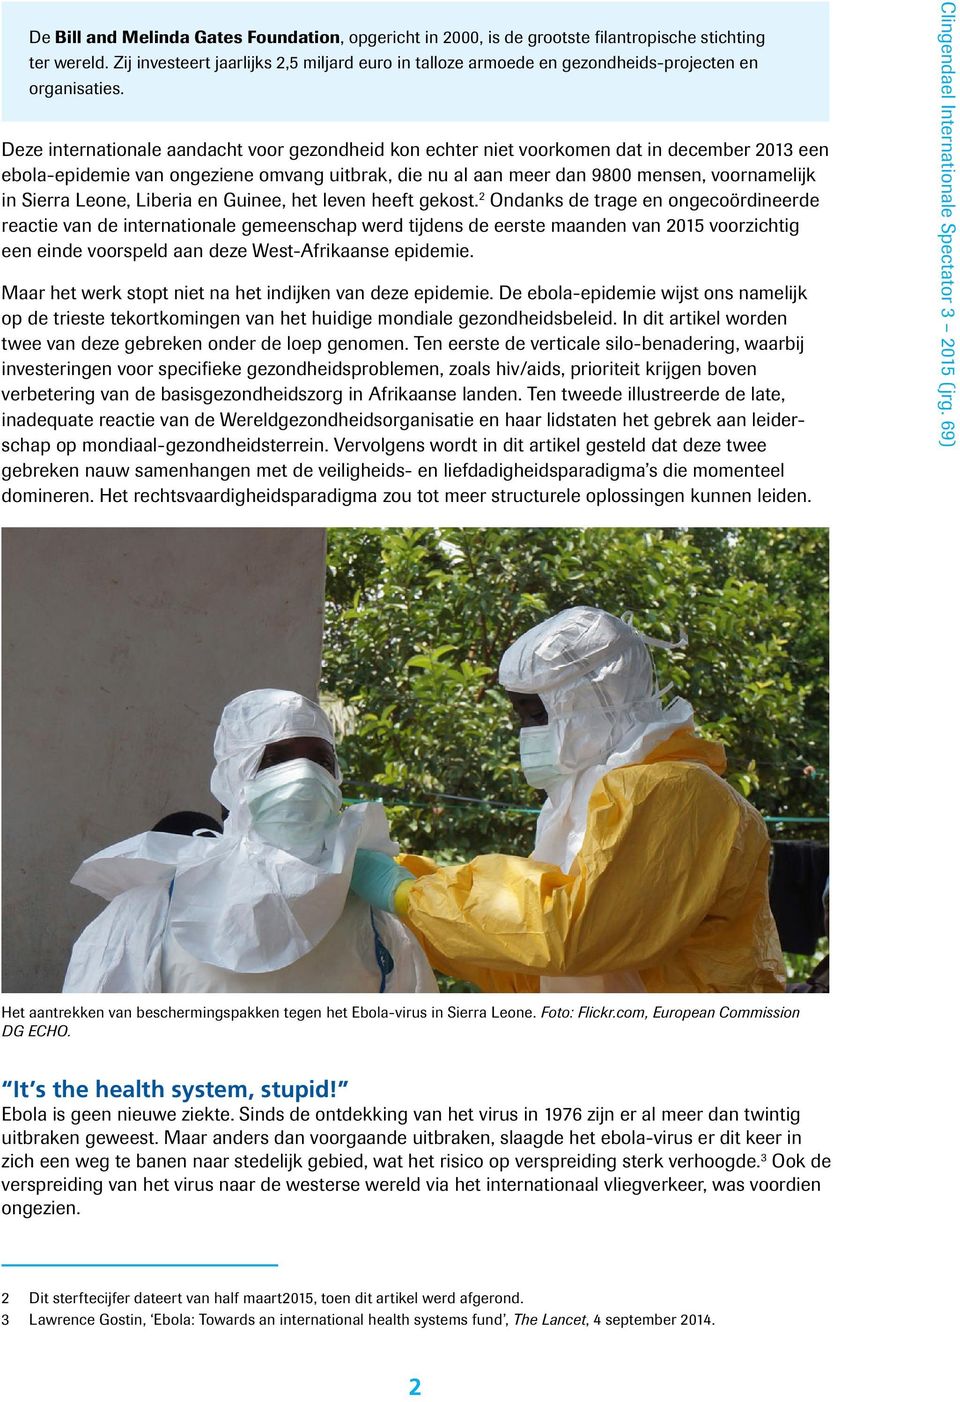 Deze internationale aandacht voor gezondheid kon echter niet voorkomen dat in december 2013 een ebola-epidemie van ongeziene omvang uitbrak, die nu al aan meer dan 9800 mensen, voornamelijk in Sierra